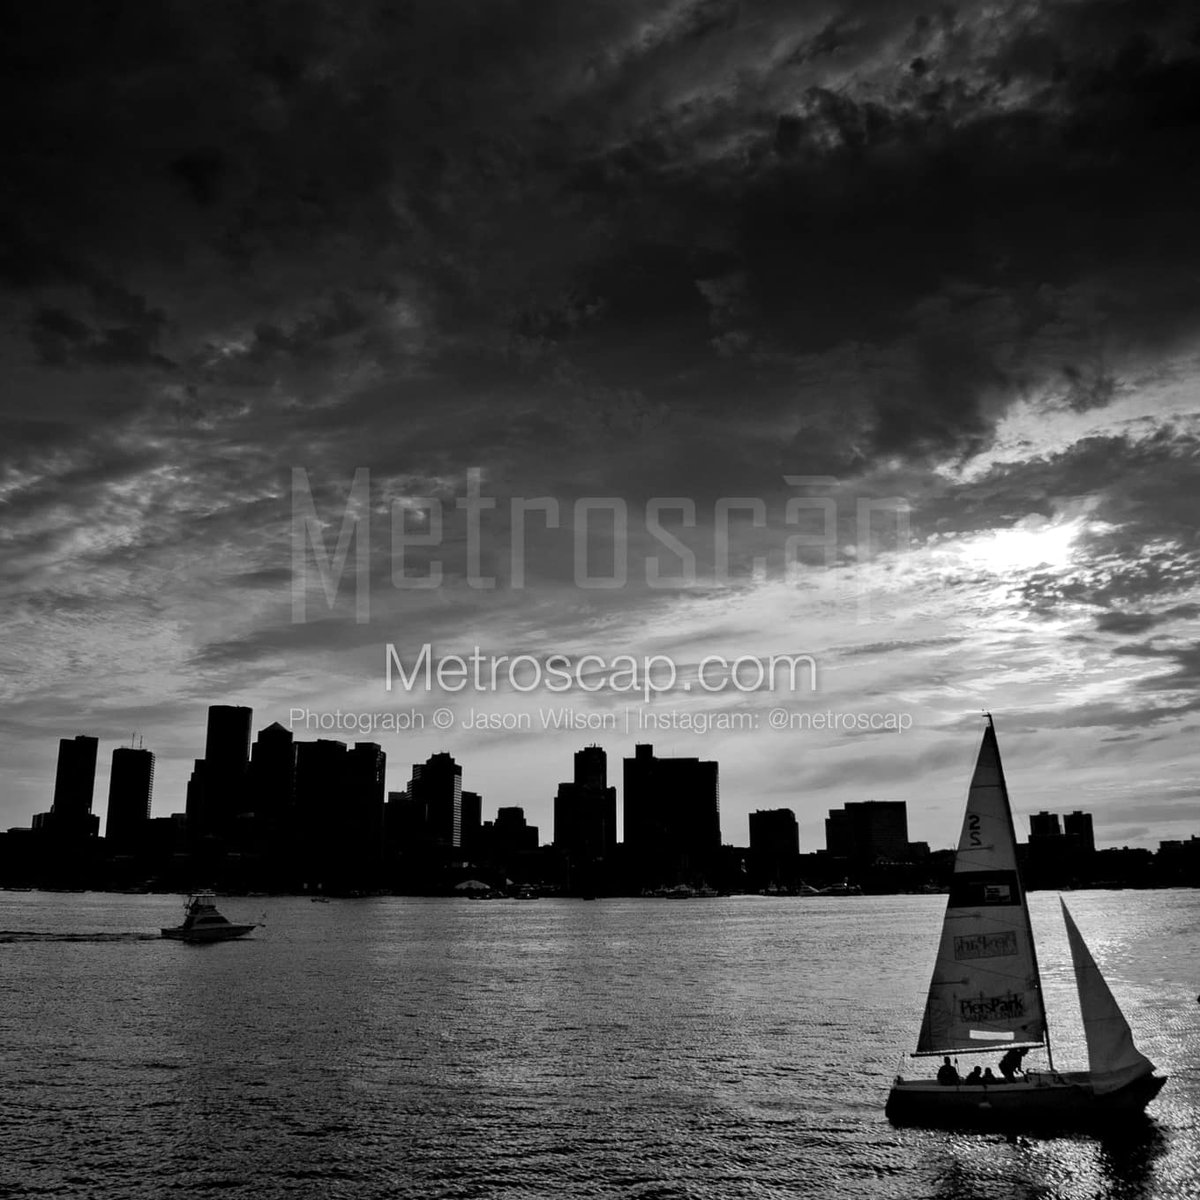 Boston photos Black & White: A Sail Boat on the Boston Harbor #boston #bostonUSA #bostondotcom #fenway #fenwayPark #617 #BlackWhite | metroscap.com/boston-themed-…